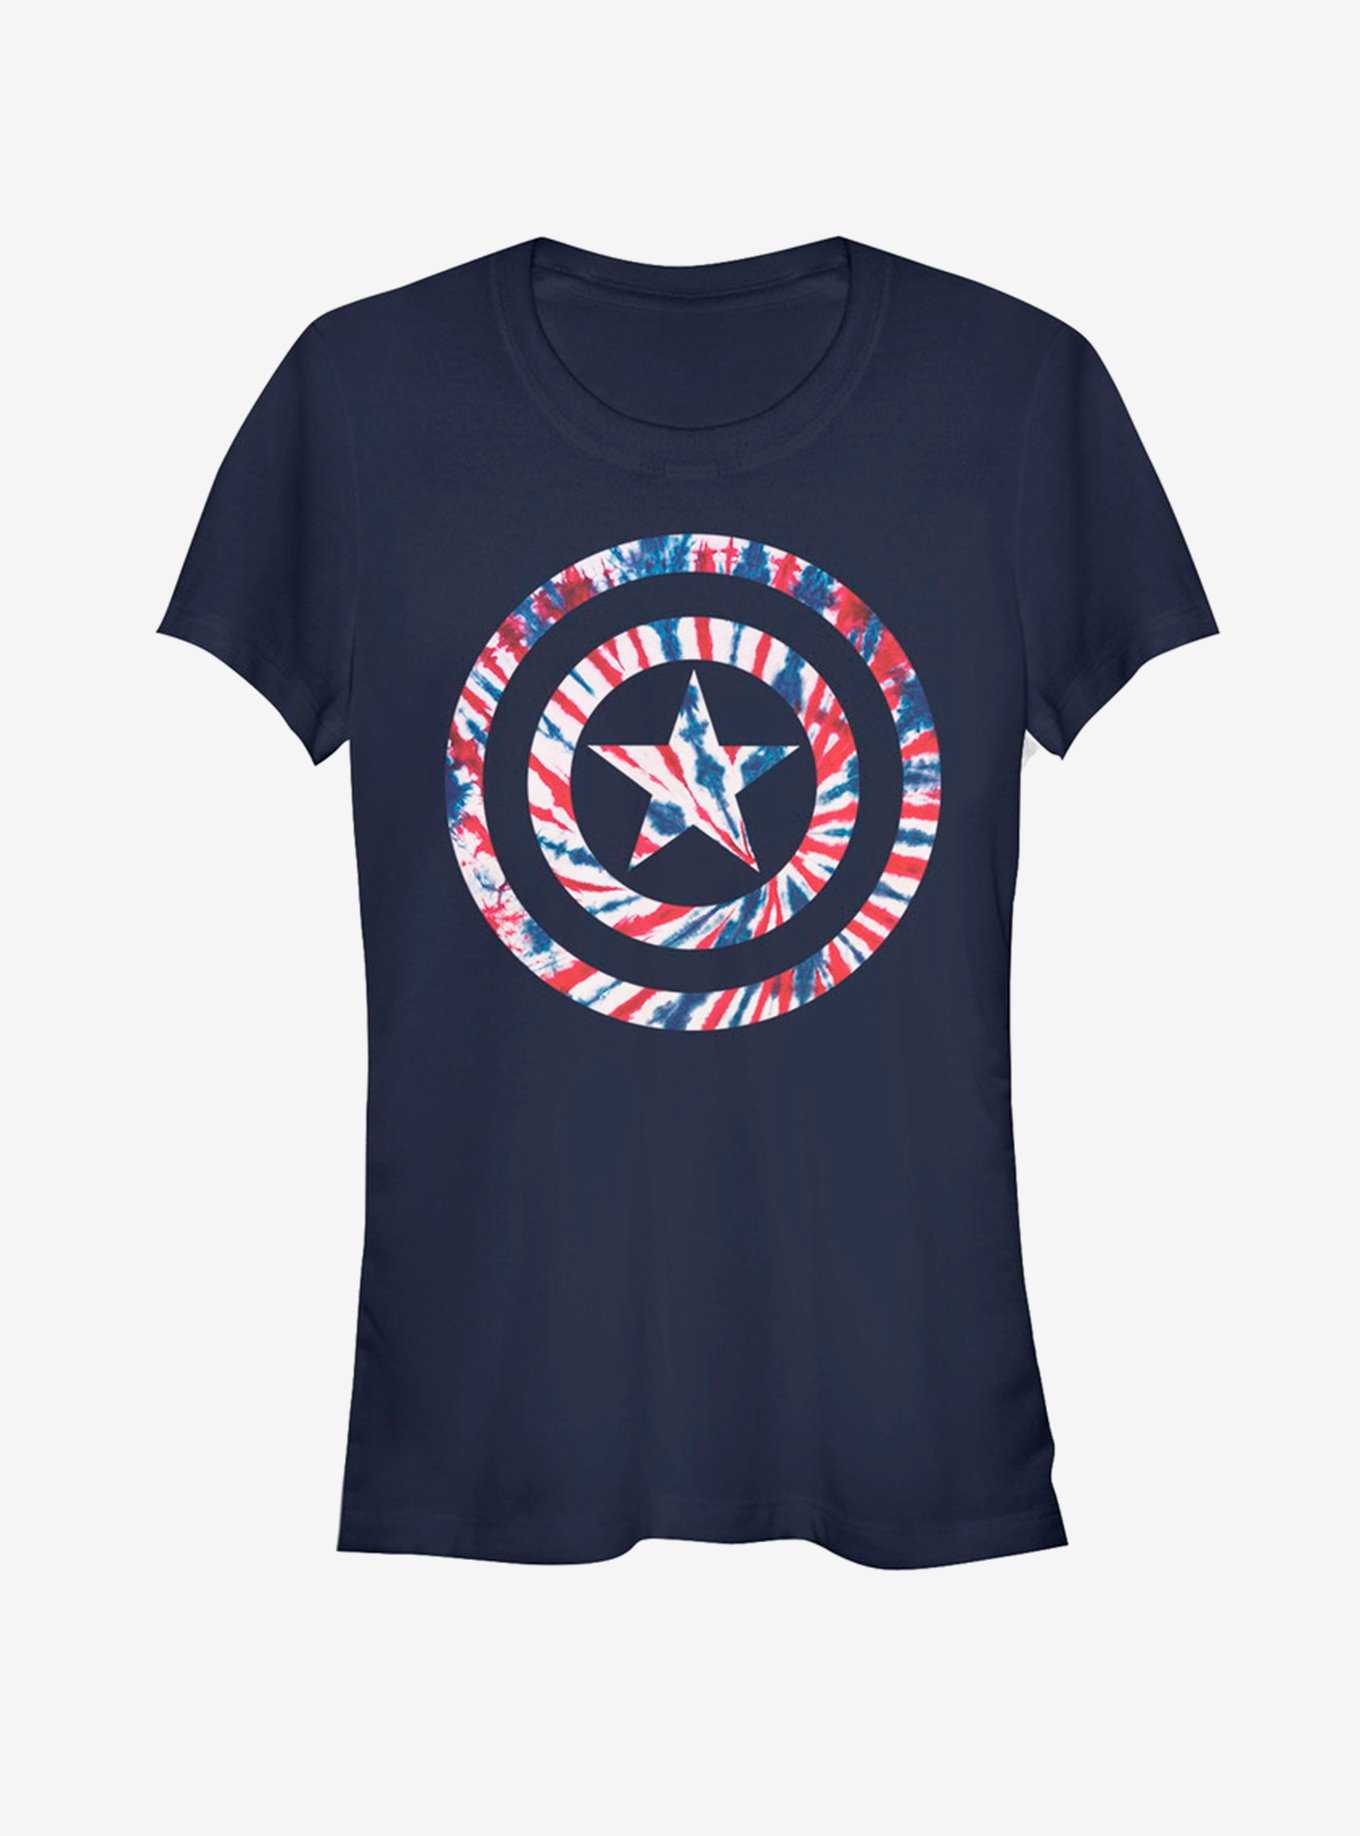 Marvel Captain America Tie-Dye Girls T-Shirt, , hi-res